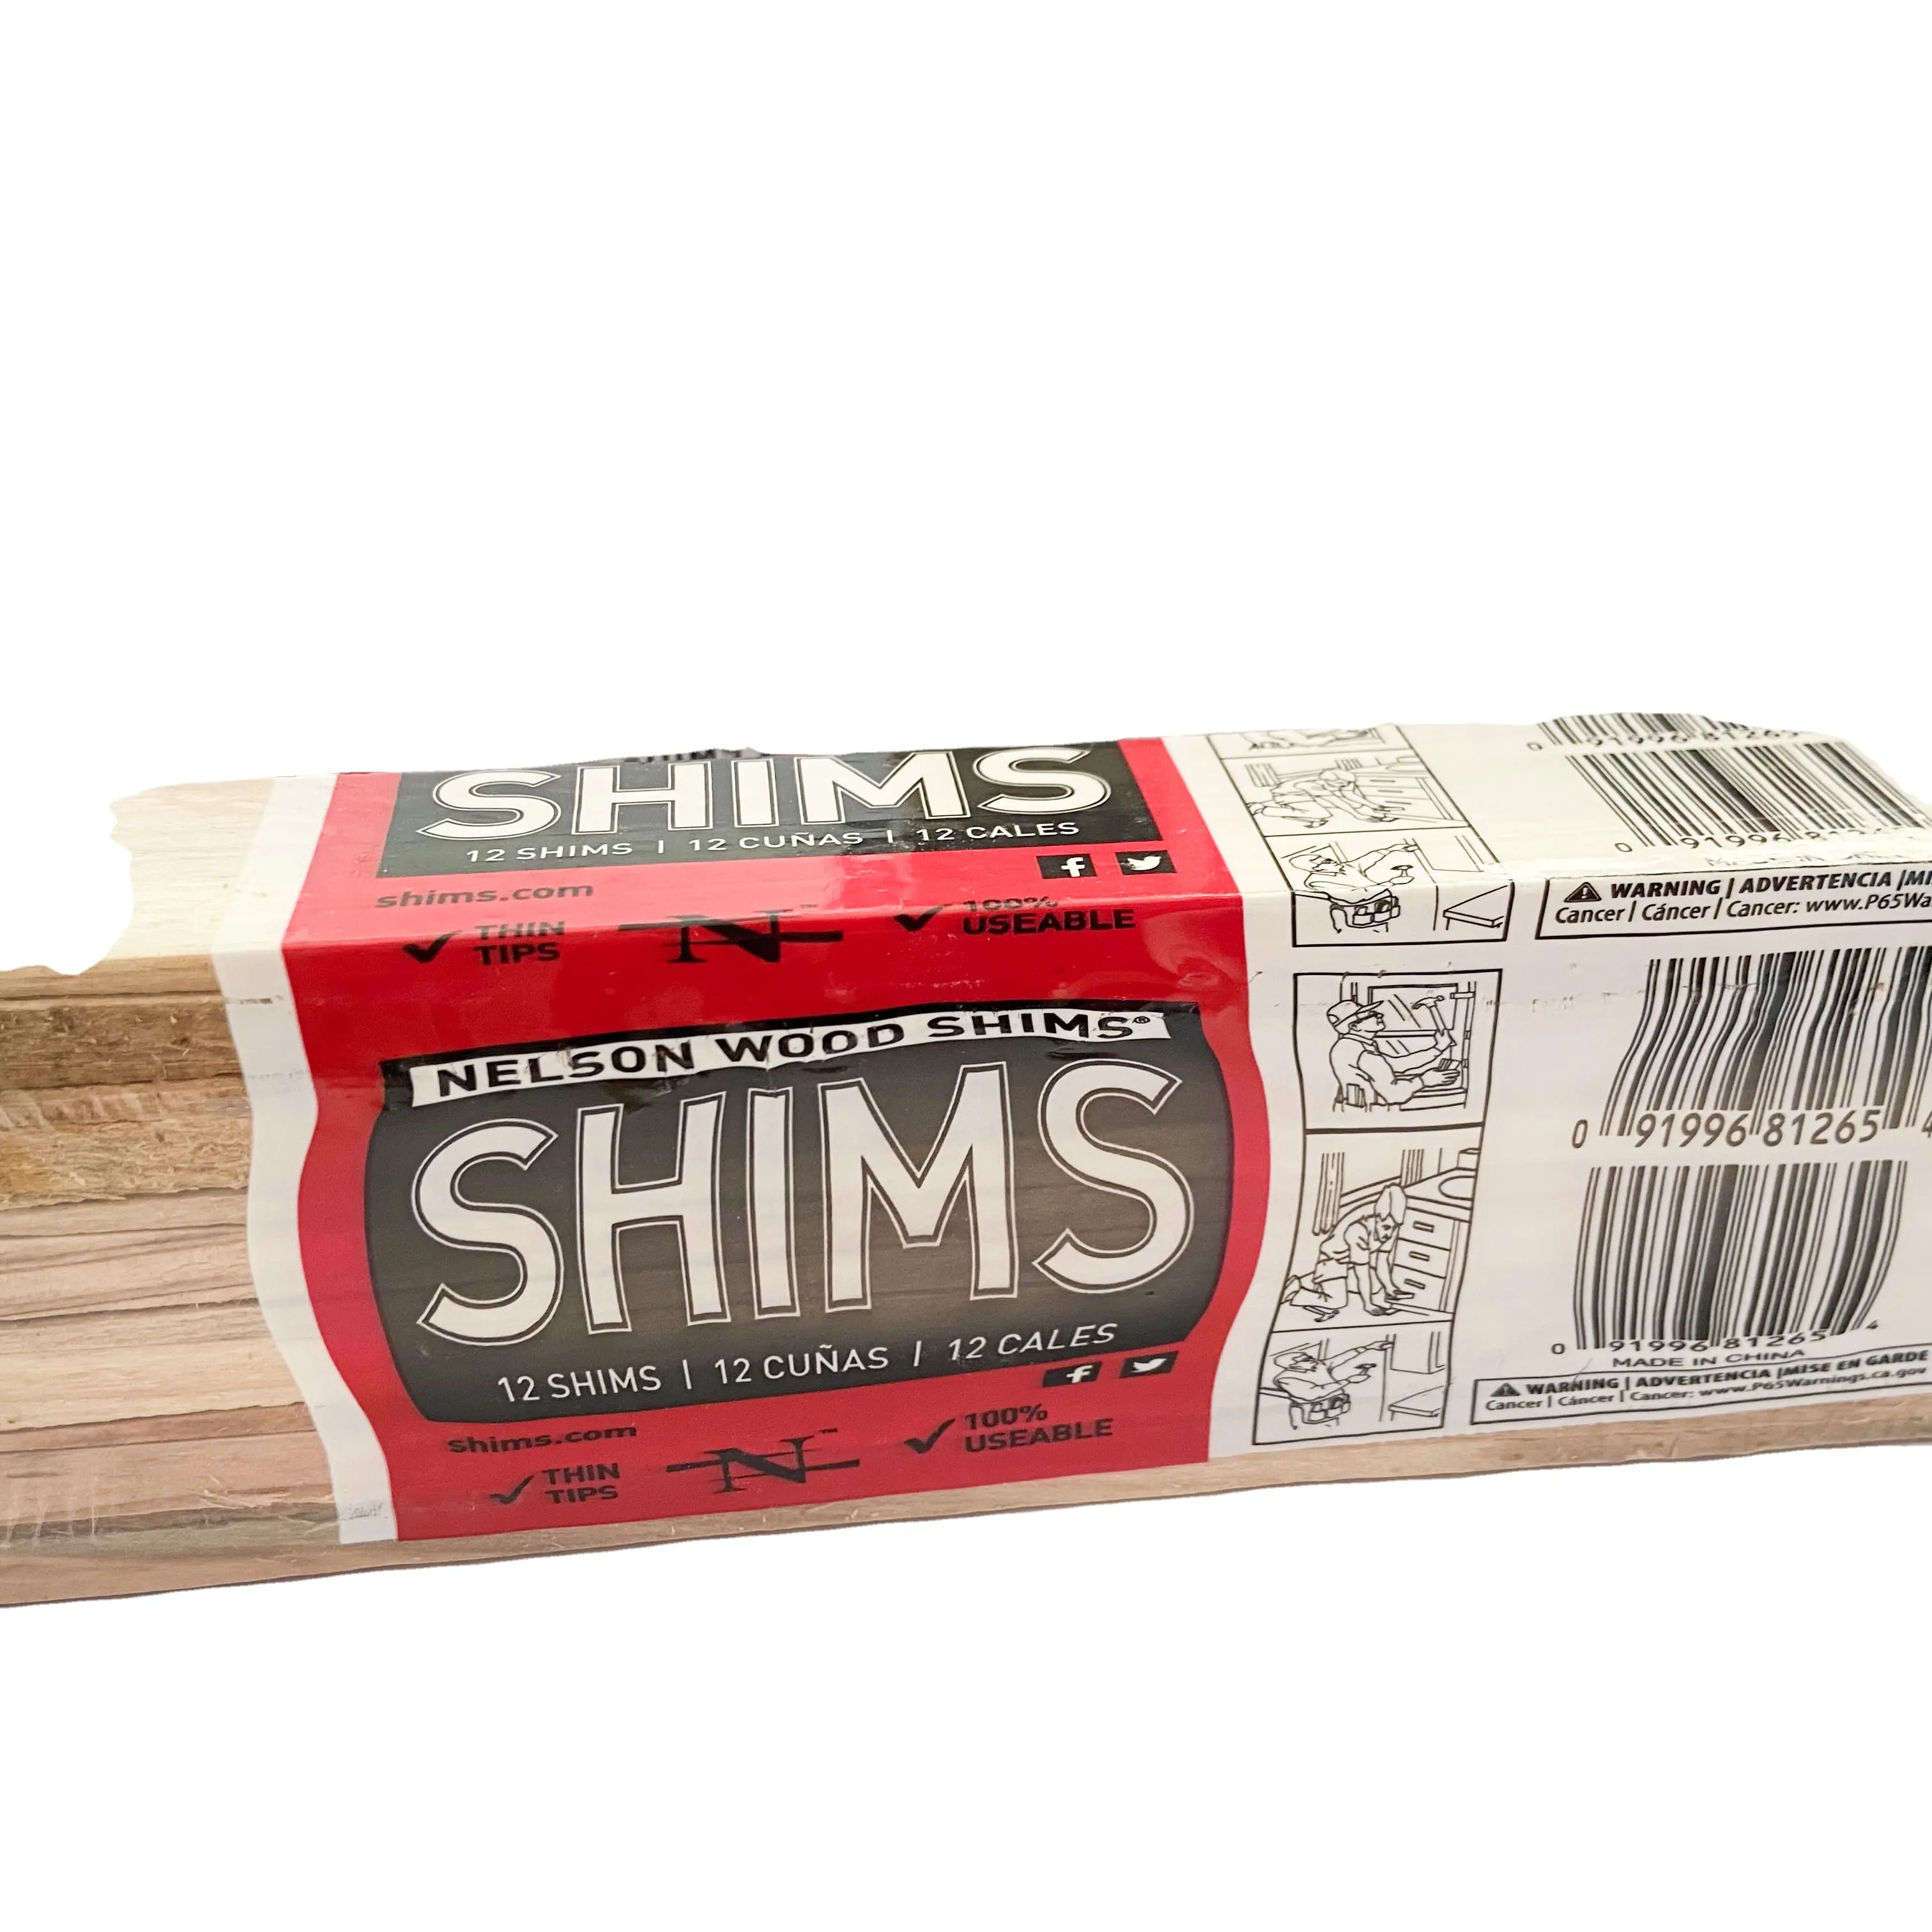 Wood Shims - DIY Bundle Wood Shims 8-Inch Shims, High Performance Natural Wood,1 Pack (12 Shims Total)